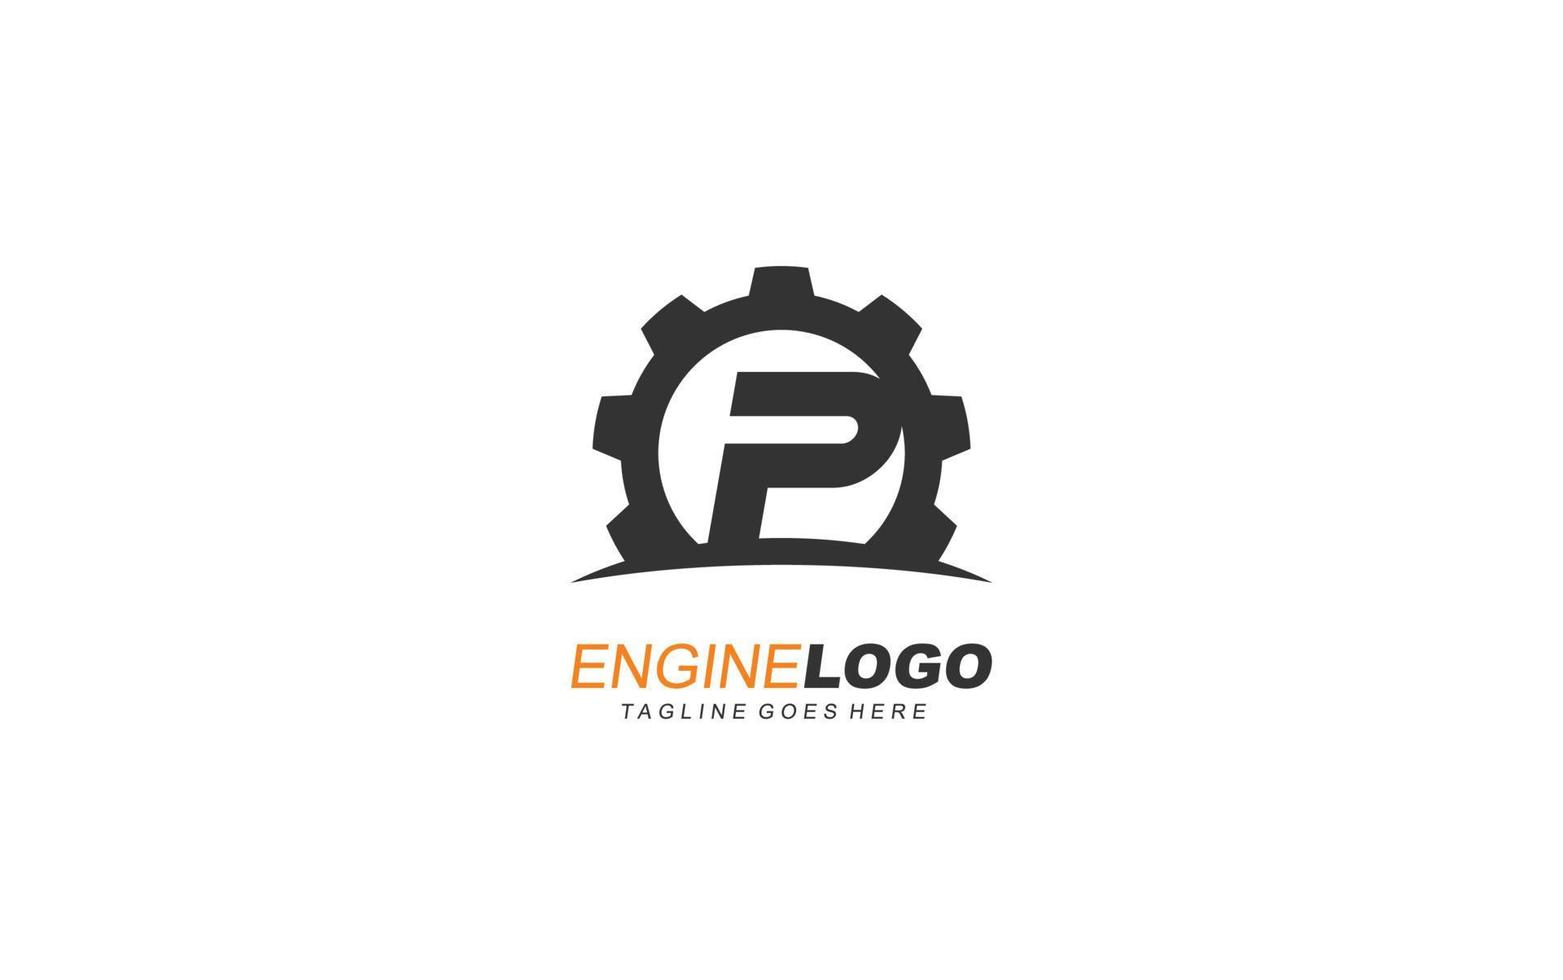 equipo con el logotipo p para la identidad. ilustración de vector de plantilla industrial para su marca.